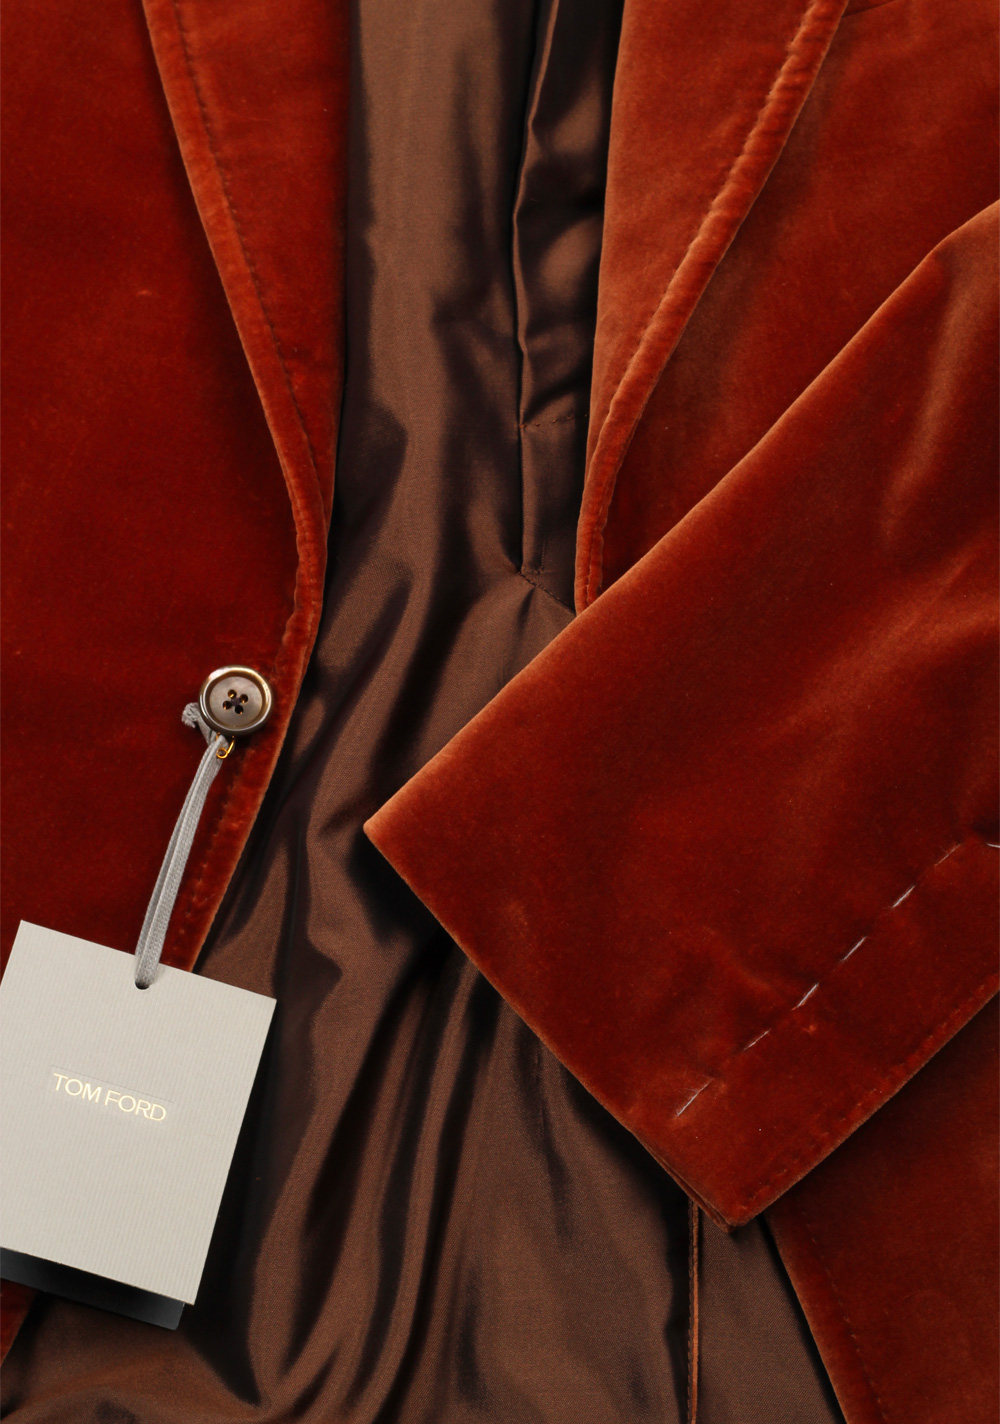 TOM FORD Shelton Velvet Brown Sport Coat Size 52 / 42R U.S. Cotton | Costume Limité